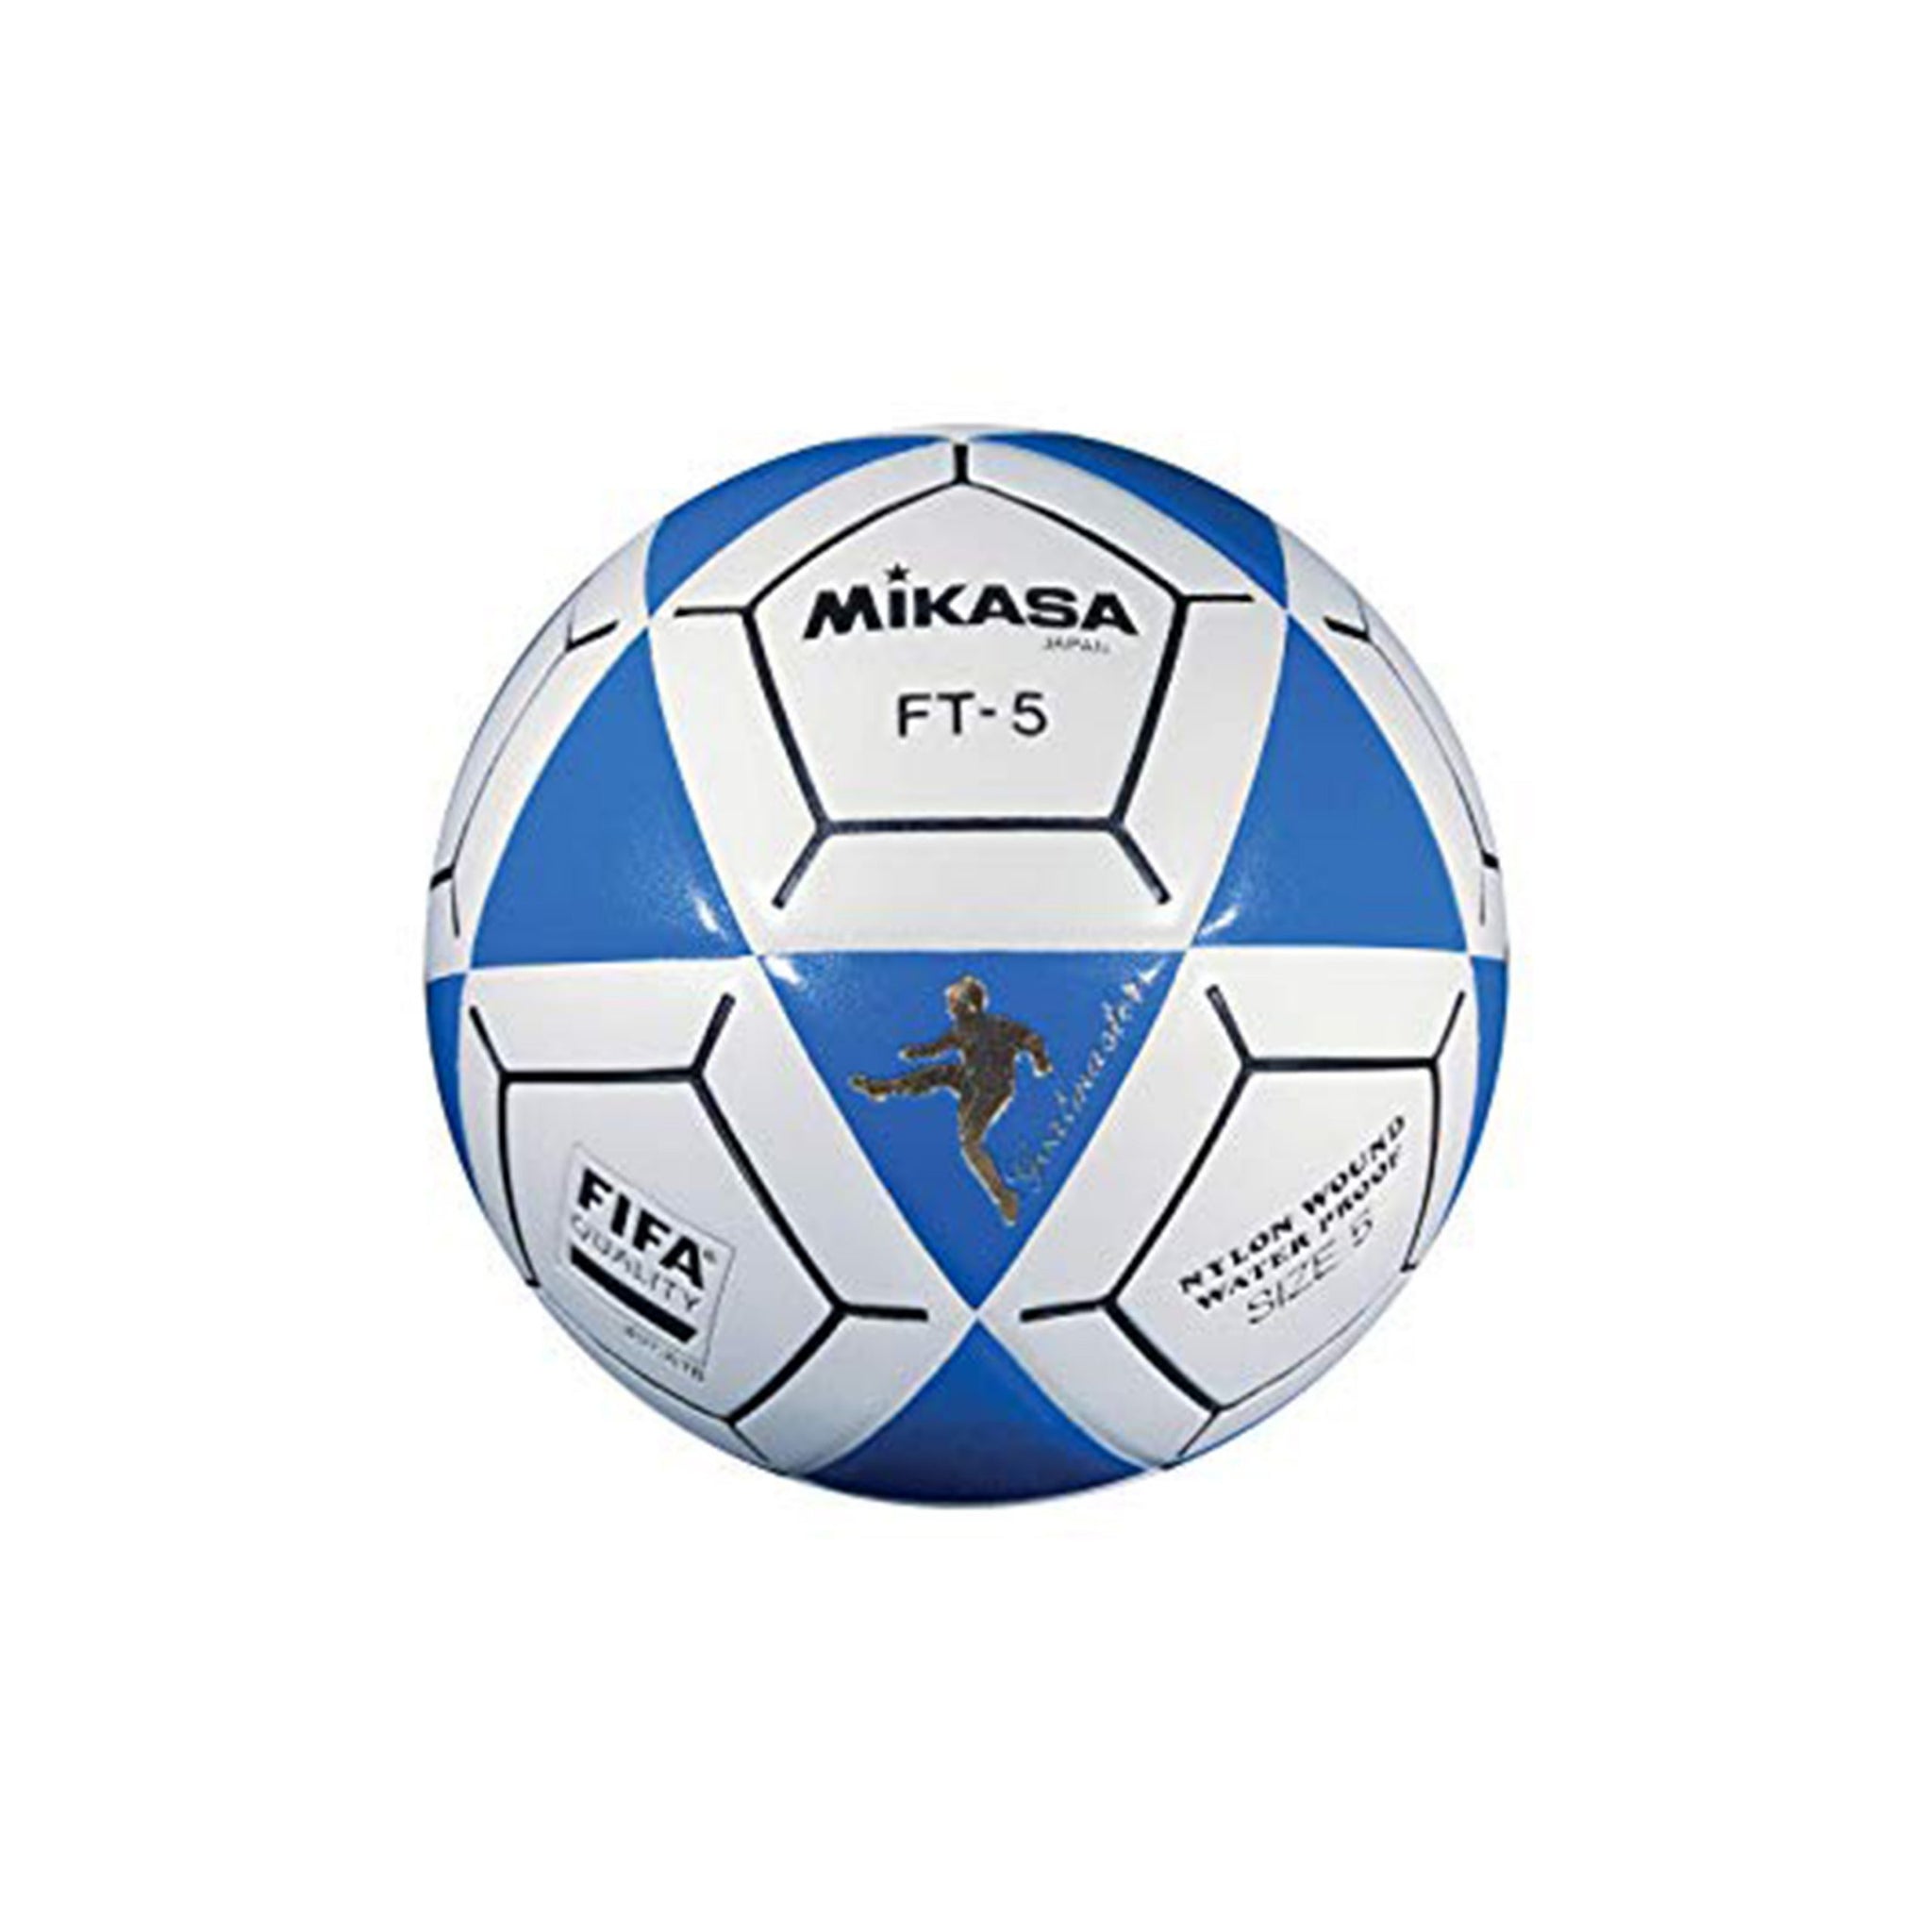 MIKASA FT - 5A Ball (Blue & White)